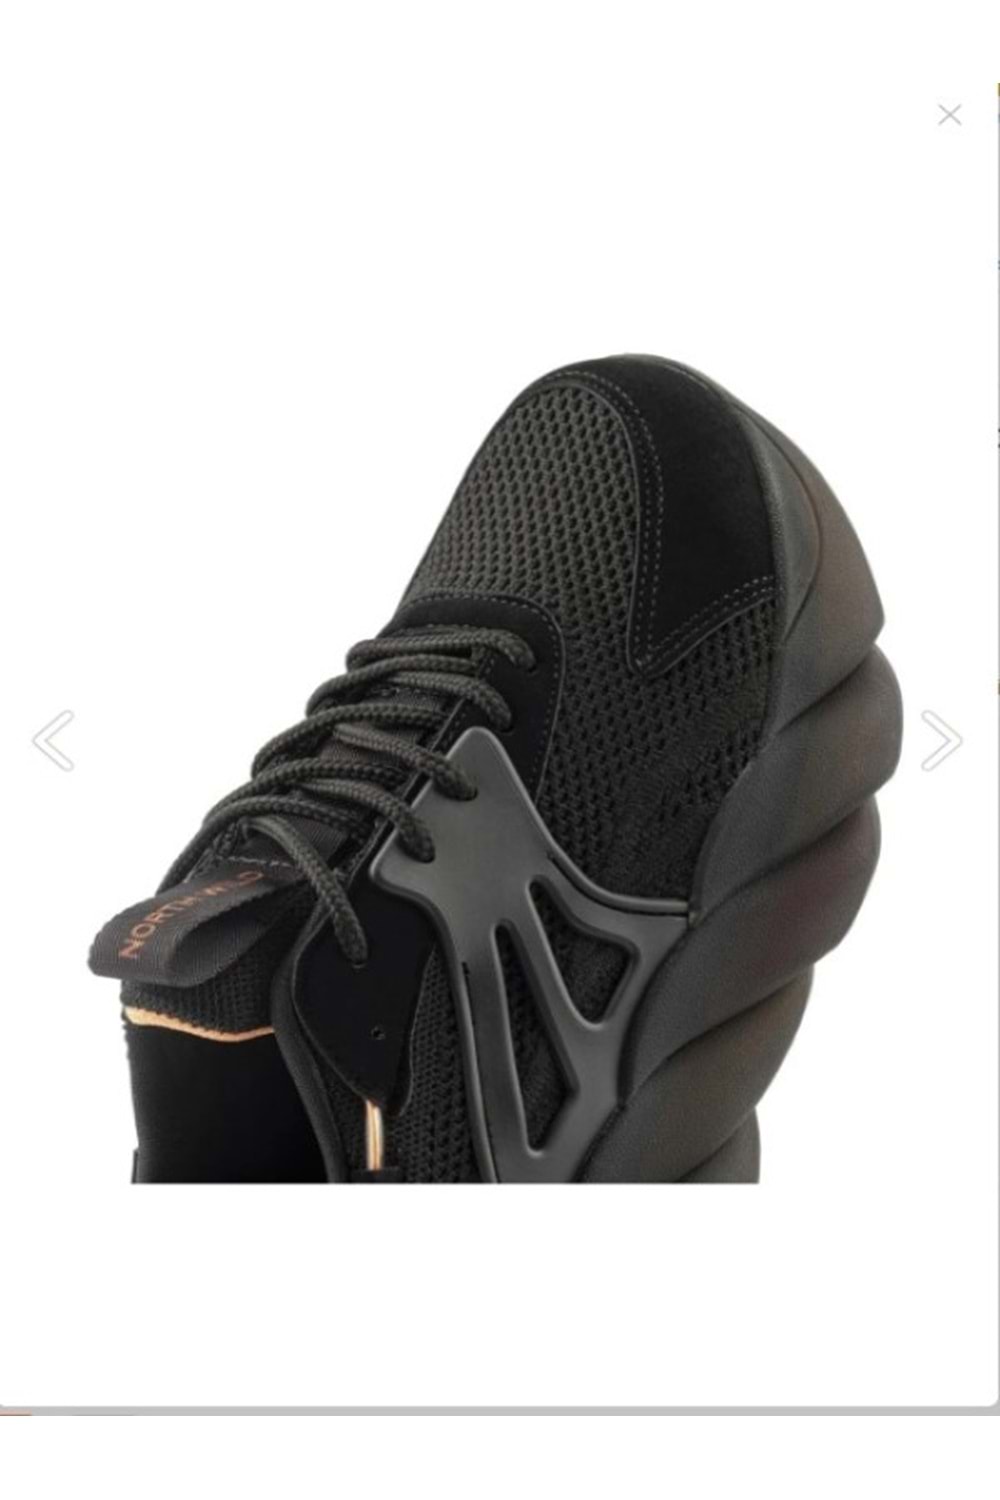 Gamelu 23Yz Care Kadın Sneakers Keten Günlük Spor Ayakkabı - Siyah - ST00206-Siyah-38